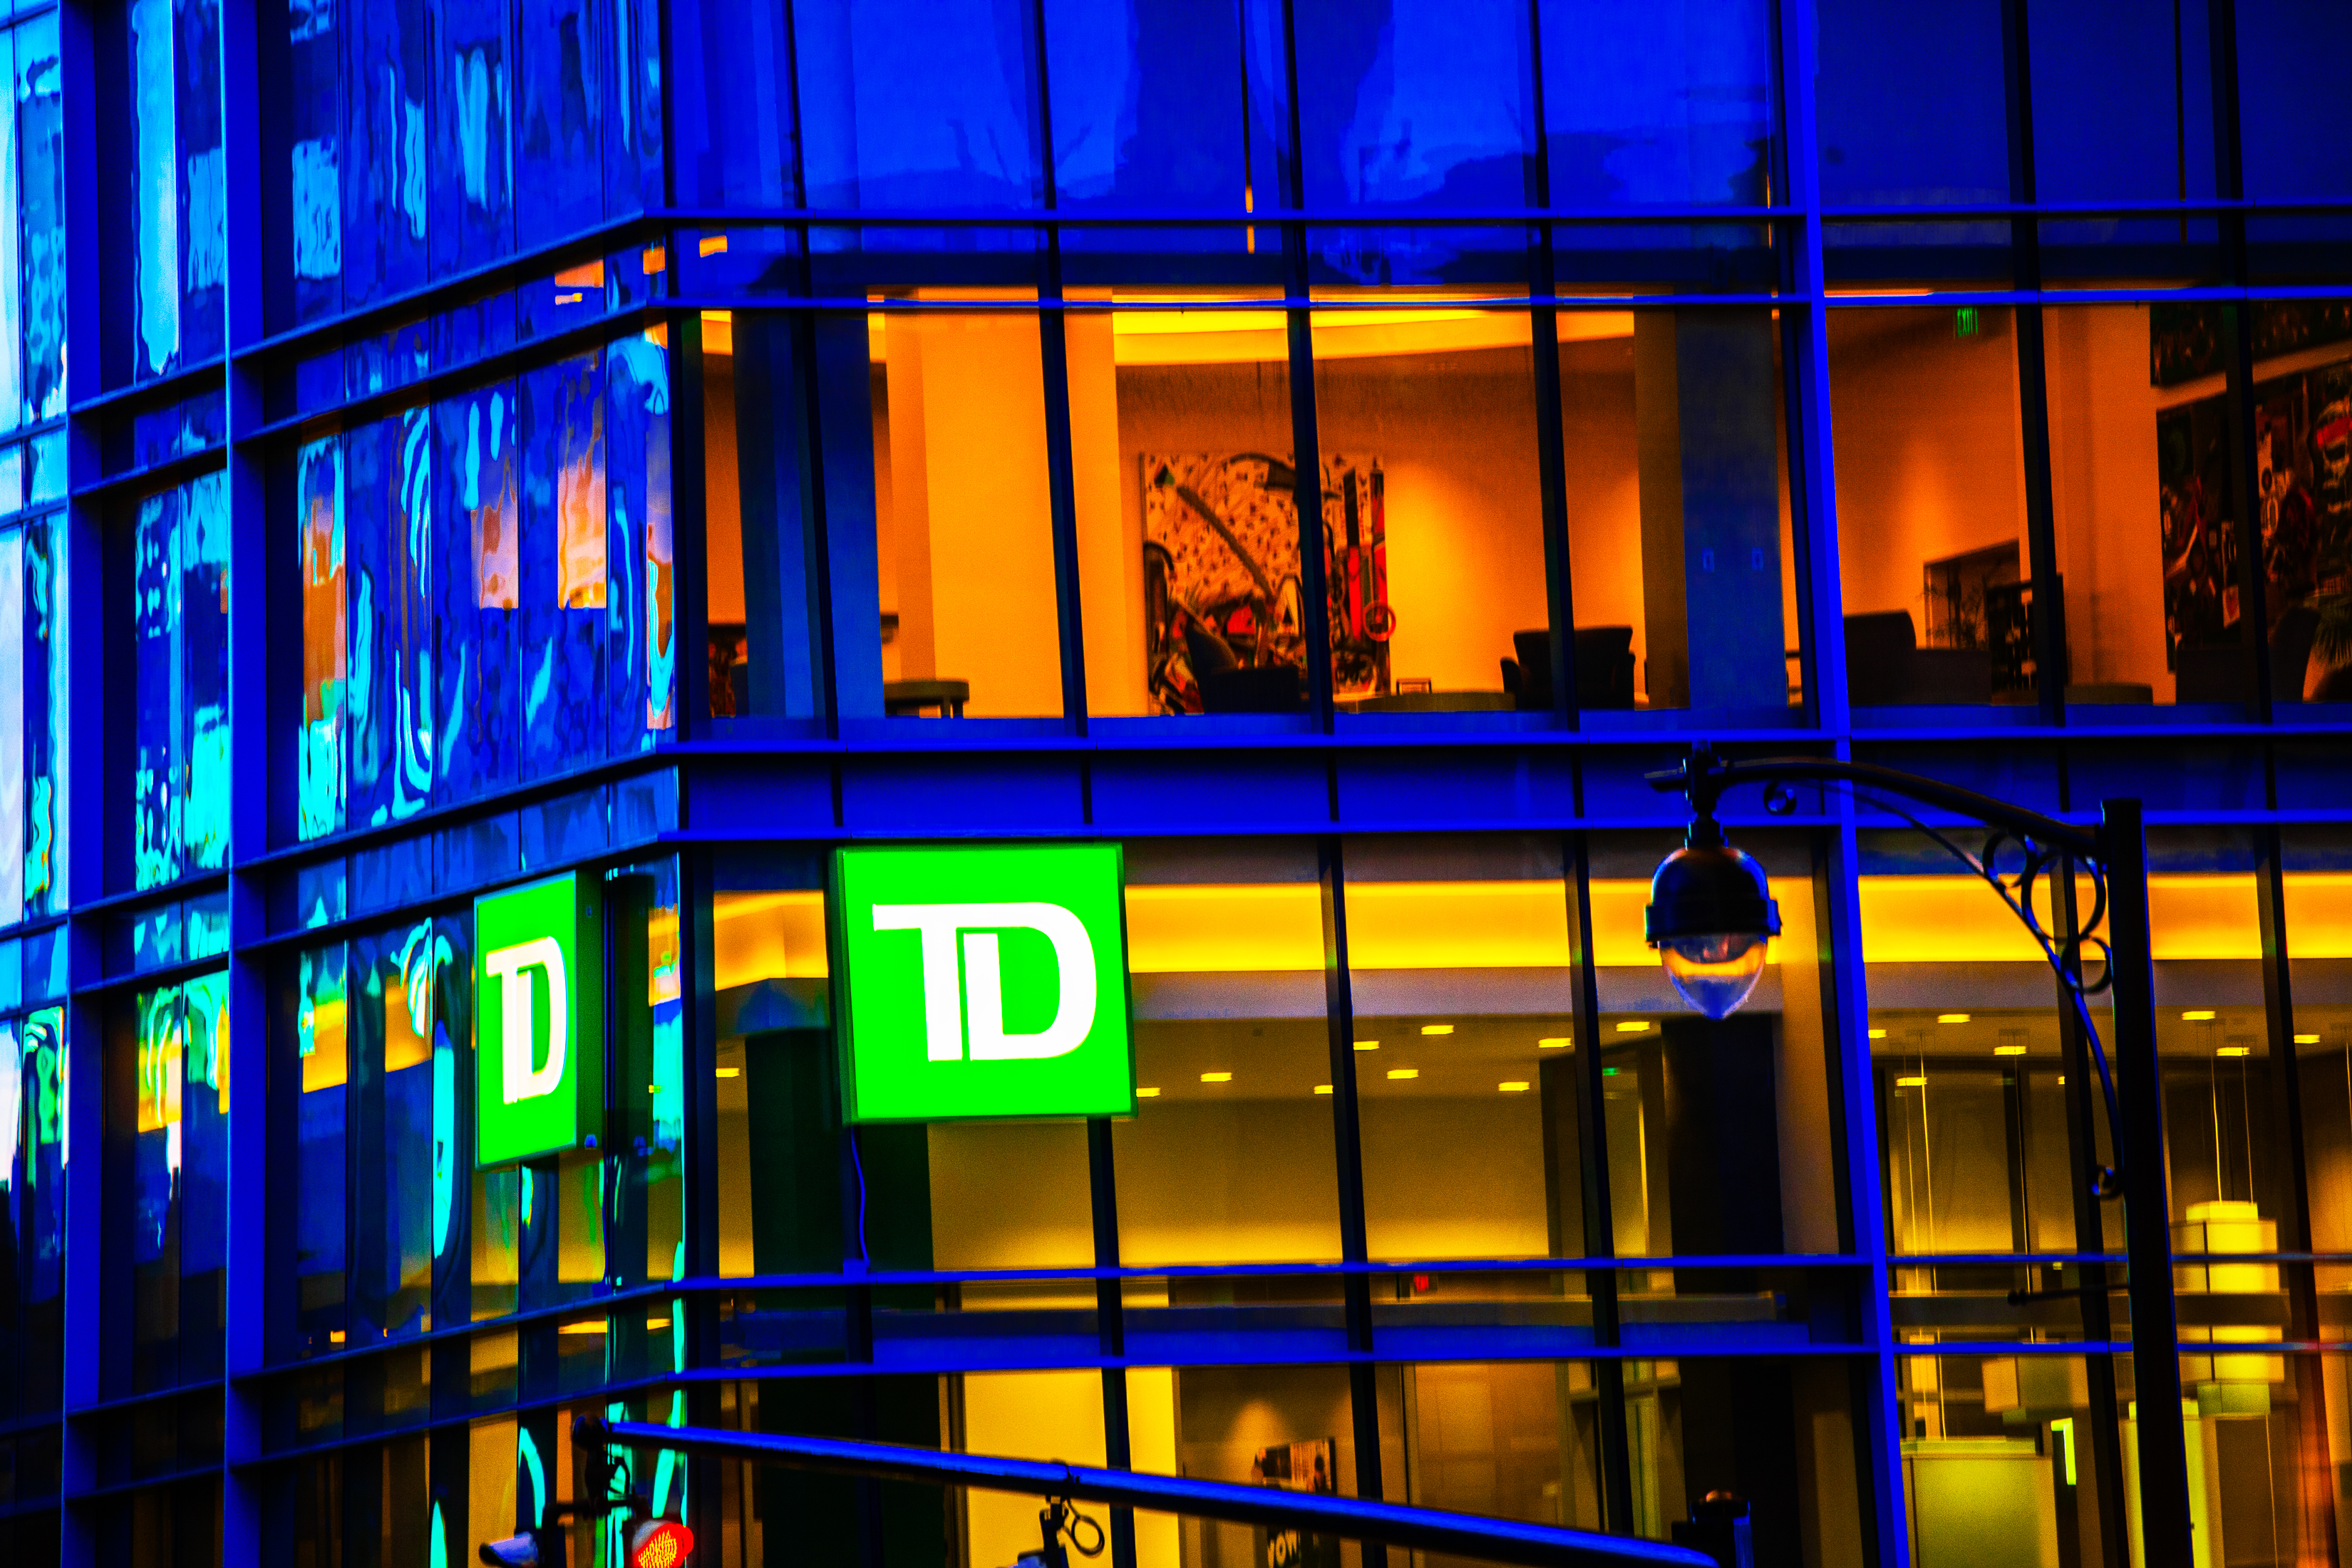 TD Bank at Night